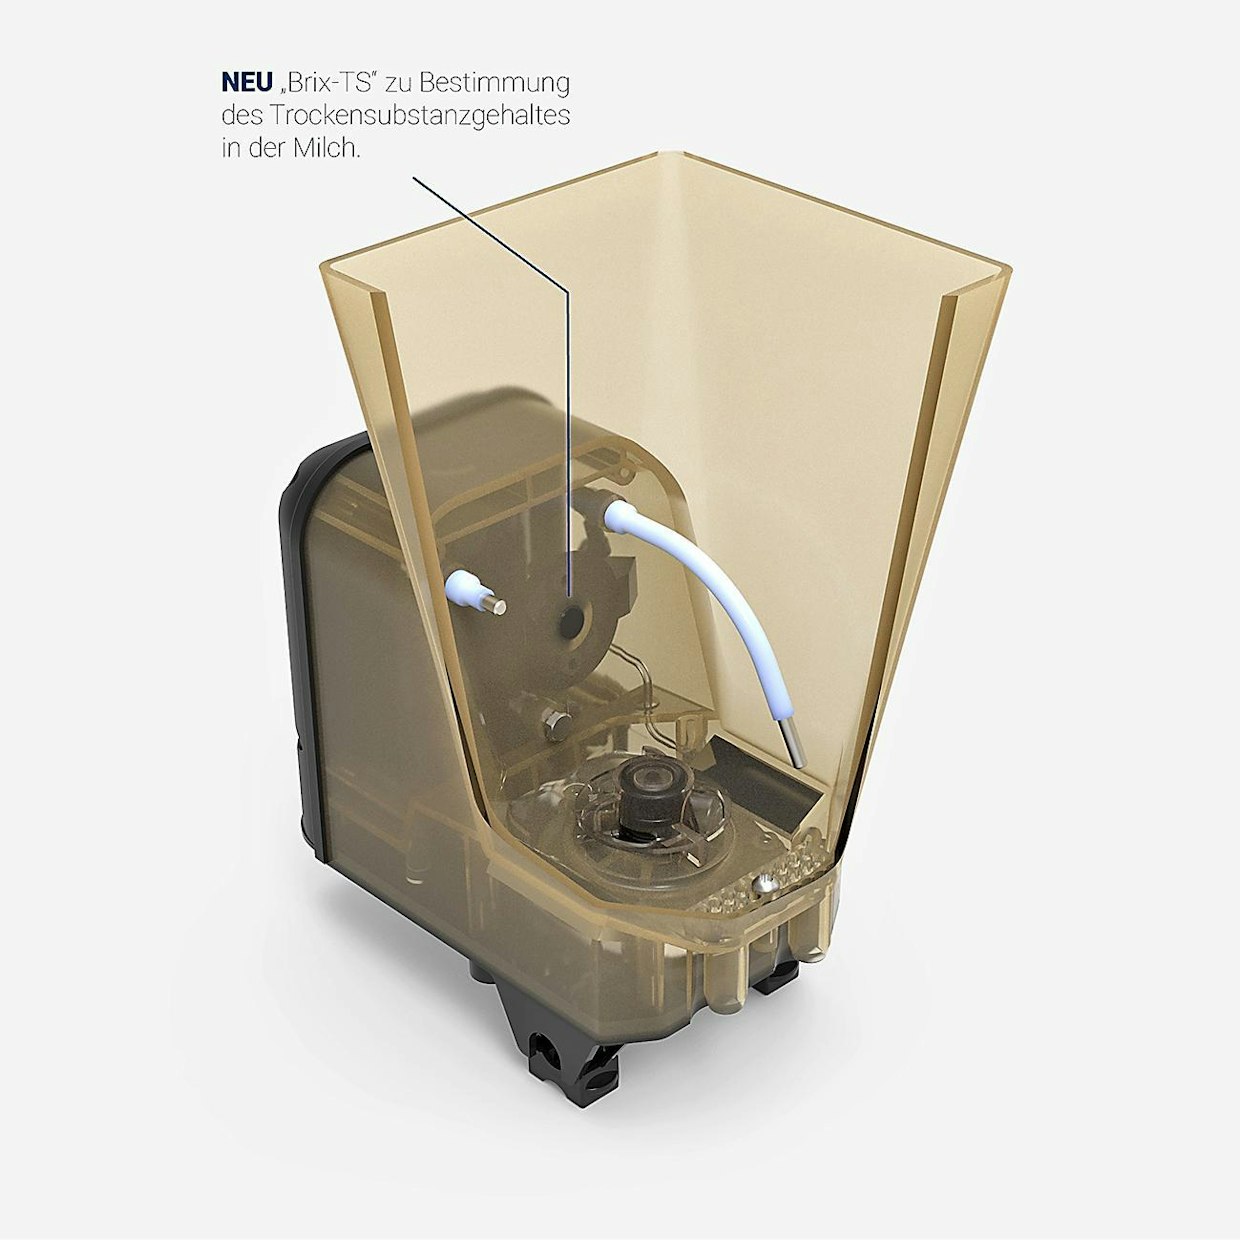 Holm &amp; Lauen vasikanjuottoautomaatteihin saa uutuutena Brix-TS Sensor -mittauksen. Laite tekee valmiille seokselle kuiva-ainemittauksen, jonka pohjalta se säätää juomarehun ja maidon tai veden sekoitussuhdetta automaattisesti.